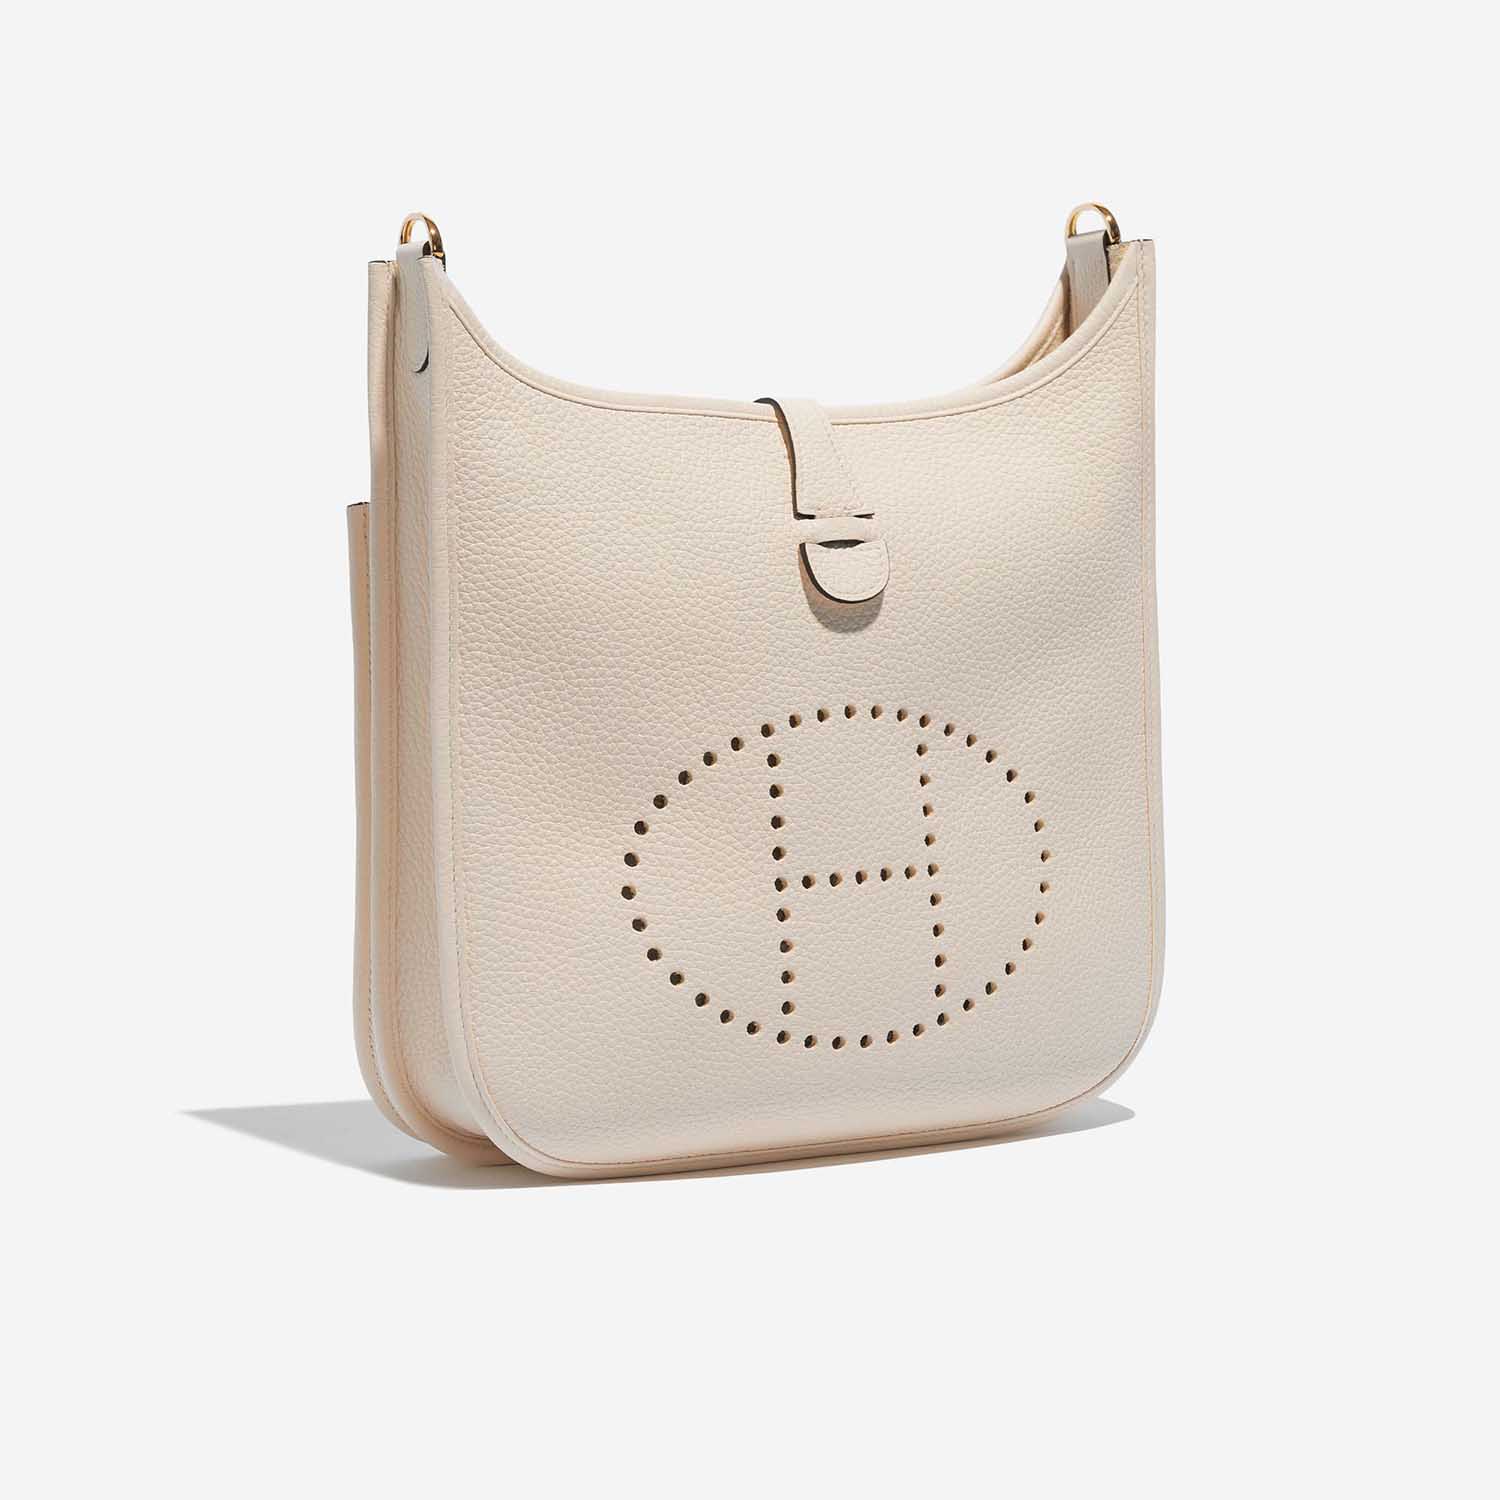 Pre-owned Hermès bag Evelyne 29 Taurillon Clemence Nata Beige Side Front | Sell your designer bag on Saclab.com